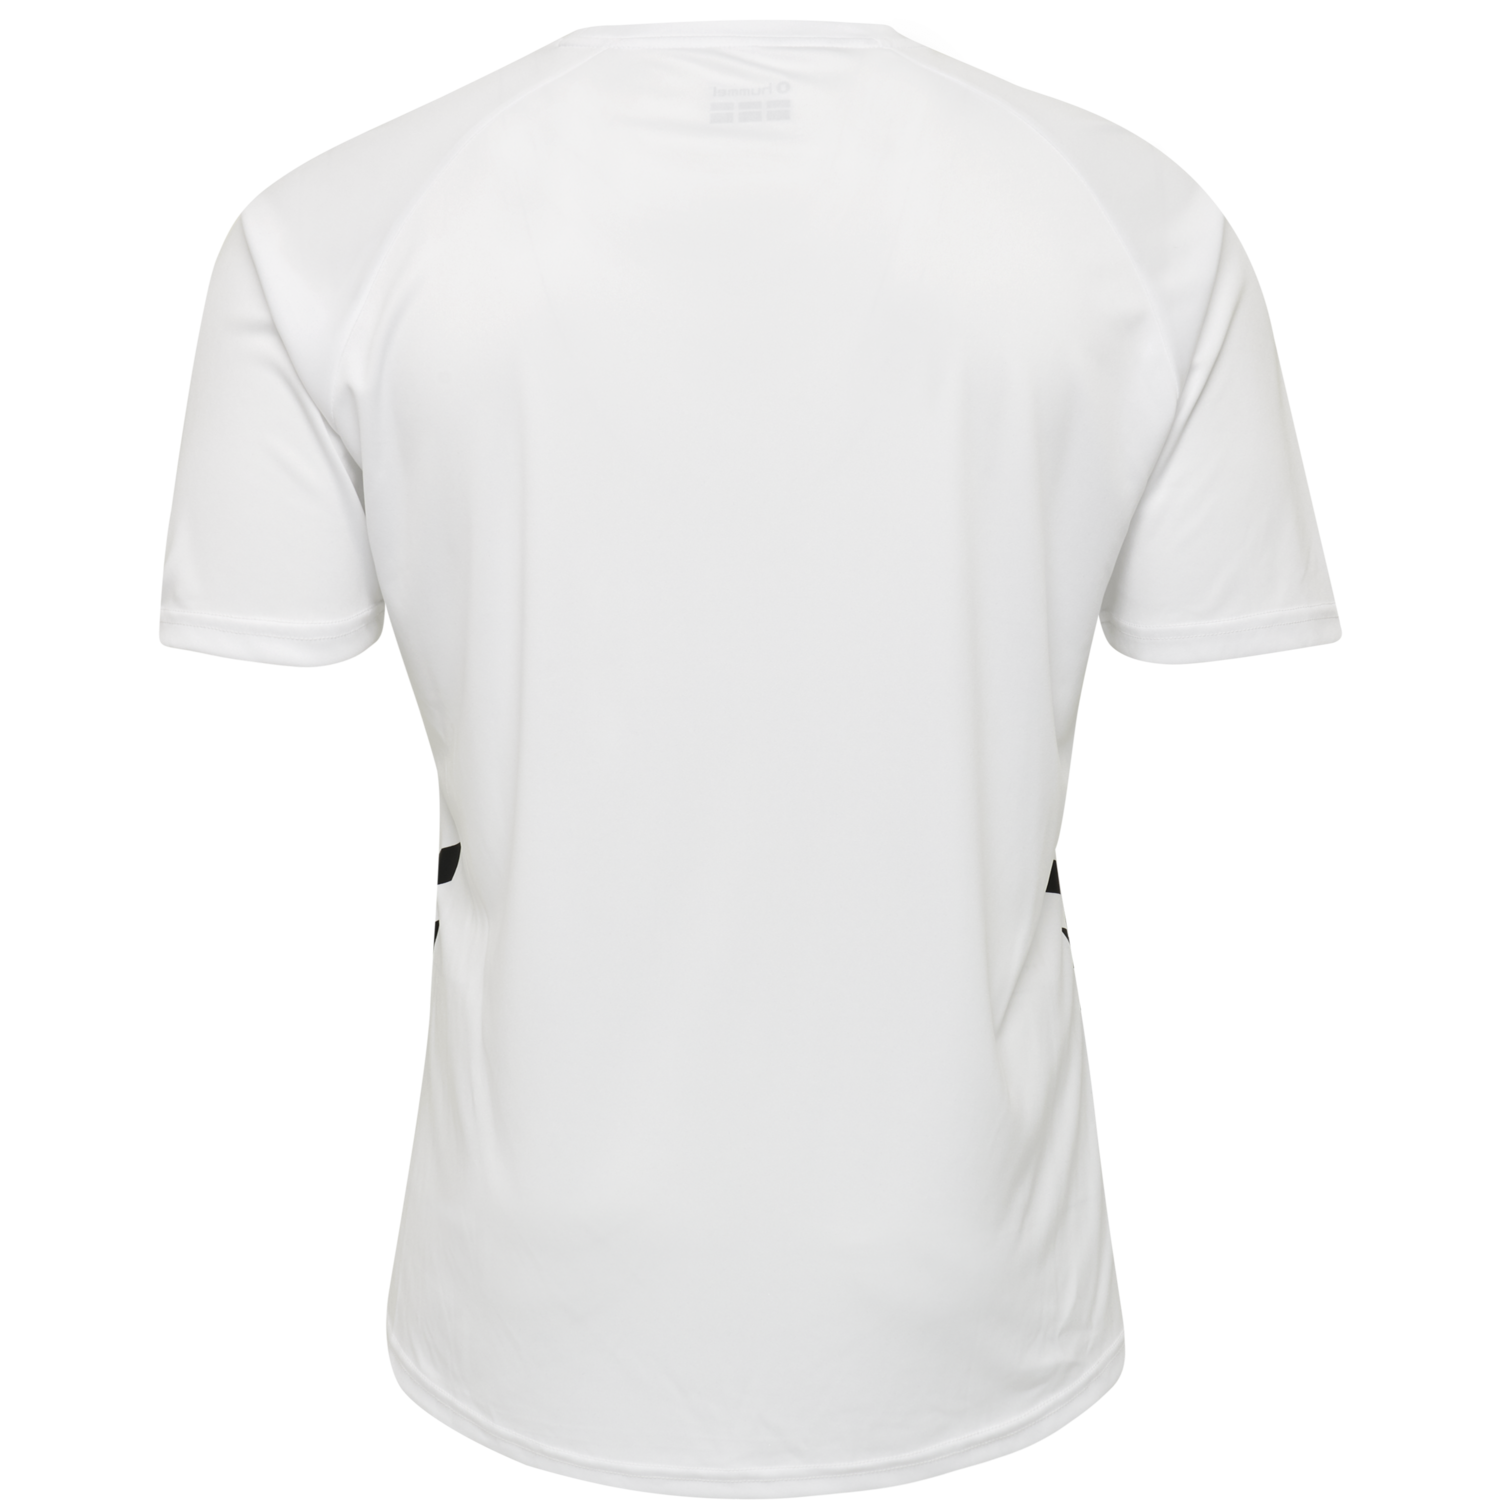 Details about   Hummel Kids Sport Training Casual Cotton Short Sleeve SS T-Shirt Tee Regular Fit